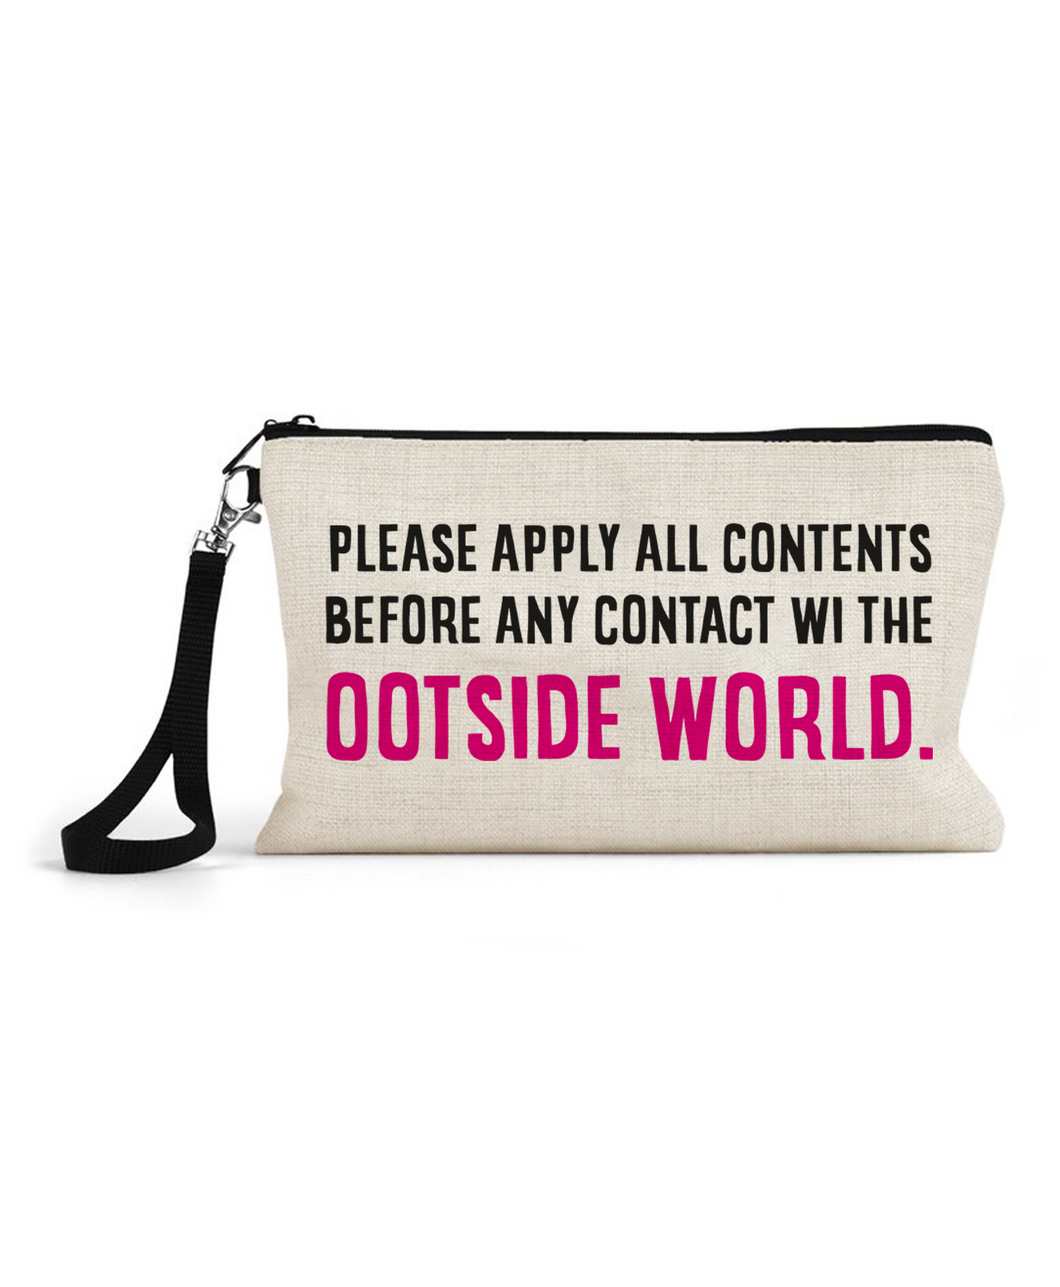 Ootside World - Cosmetic Bag